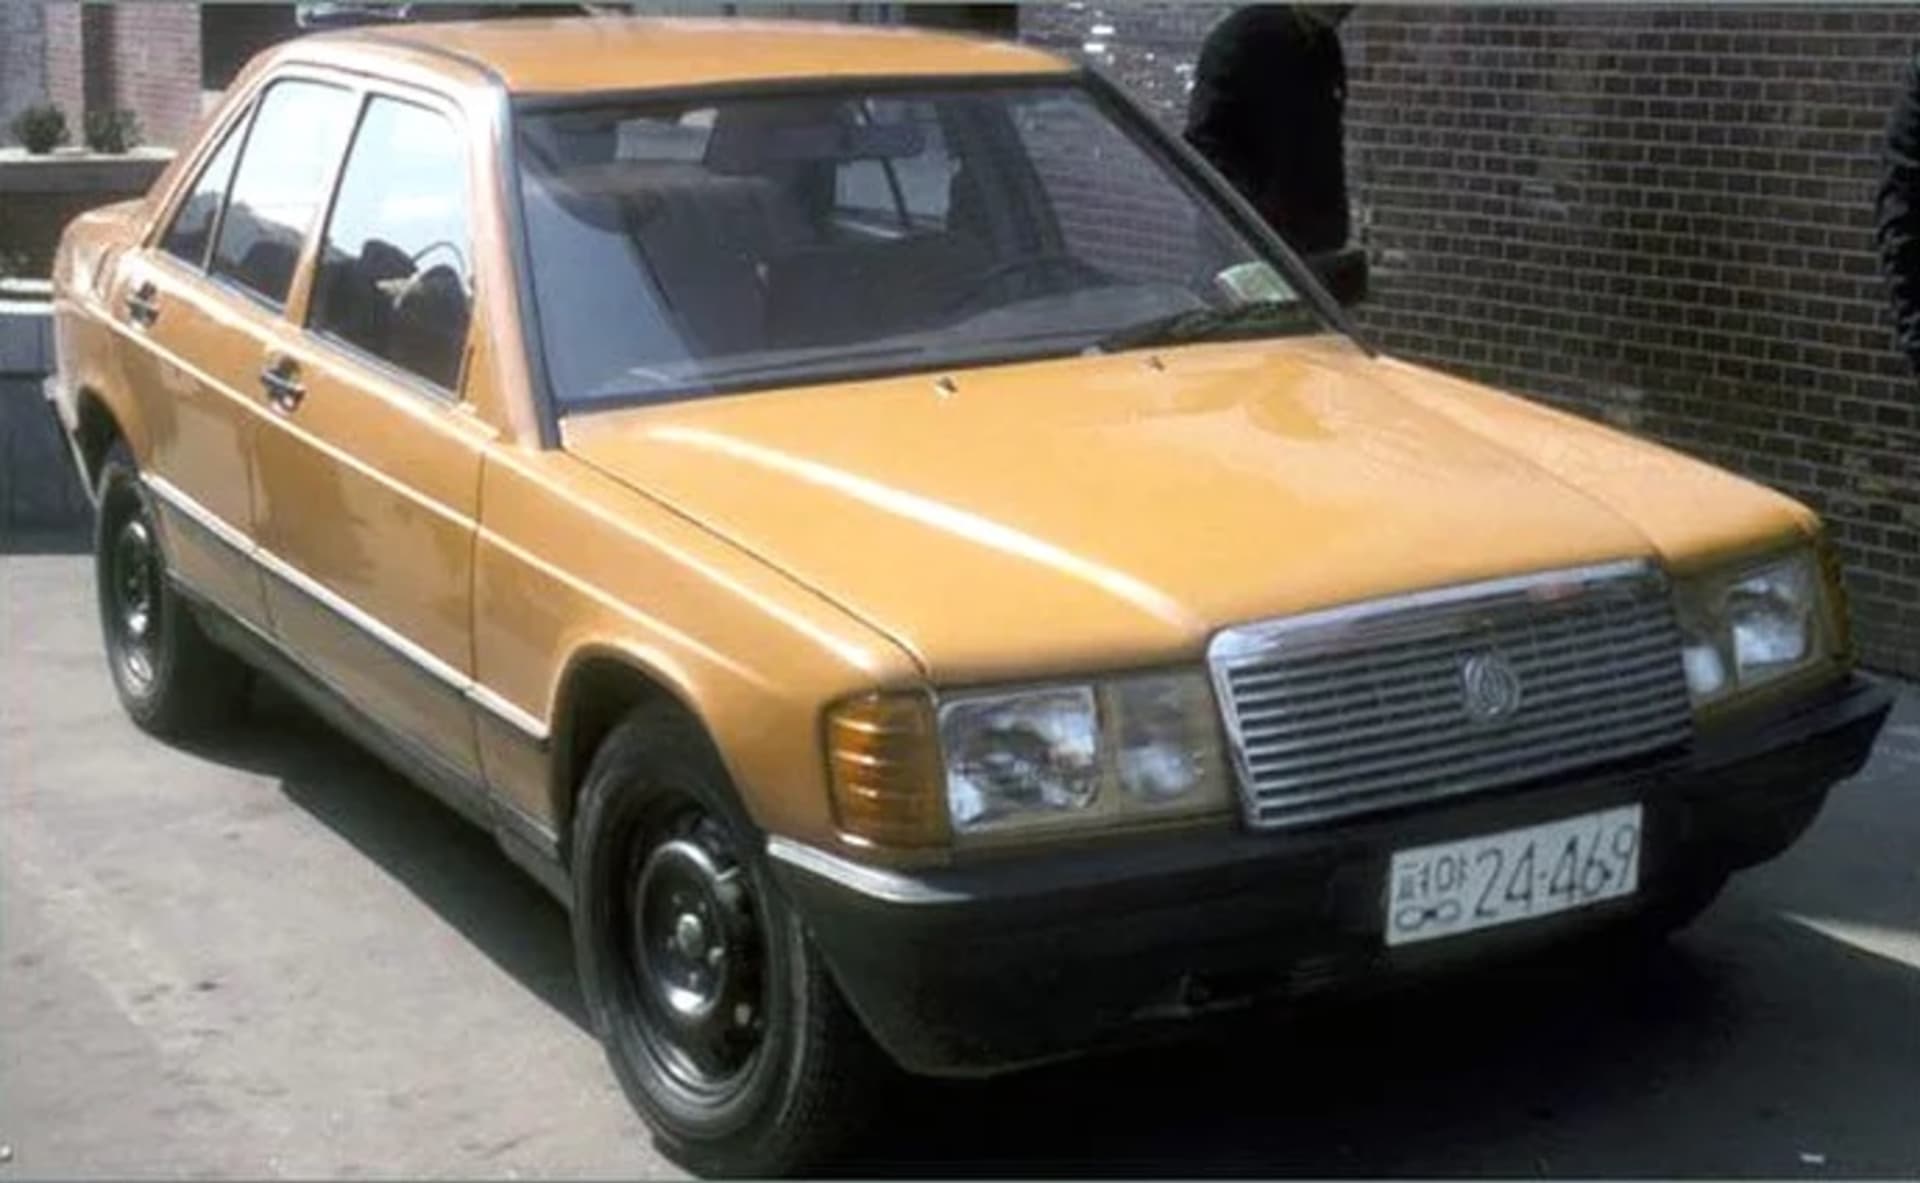 V roce 1987 dovezla KLDR pokoutně z Tchajwanu několik Mercedesů 190, rozebrala je na prvočinitele a co zvládla, okopírovala. Výsledkem byl vz Kaengsaeng 88 (někdy též Pyongyang 4.10), auto otřesné kvality vybavené údajně jakýmsi ruským motorem. 